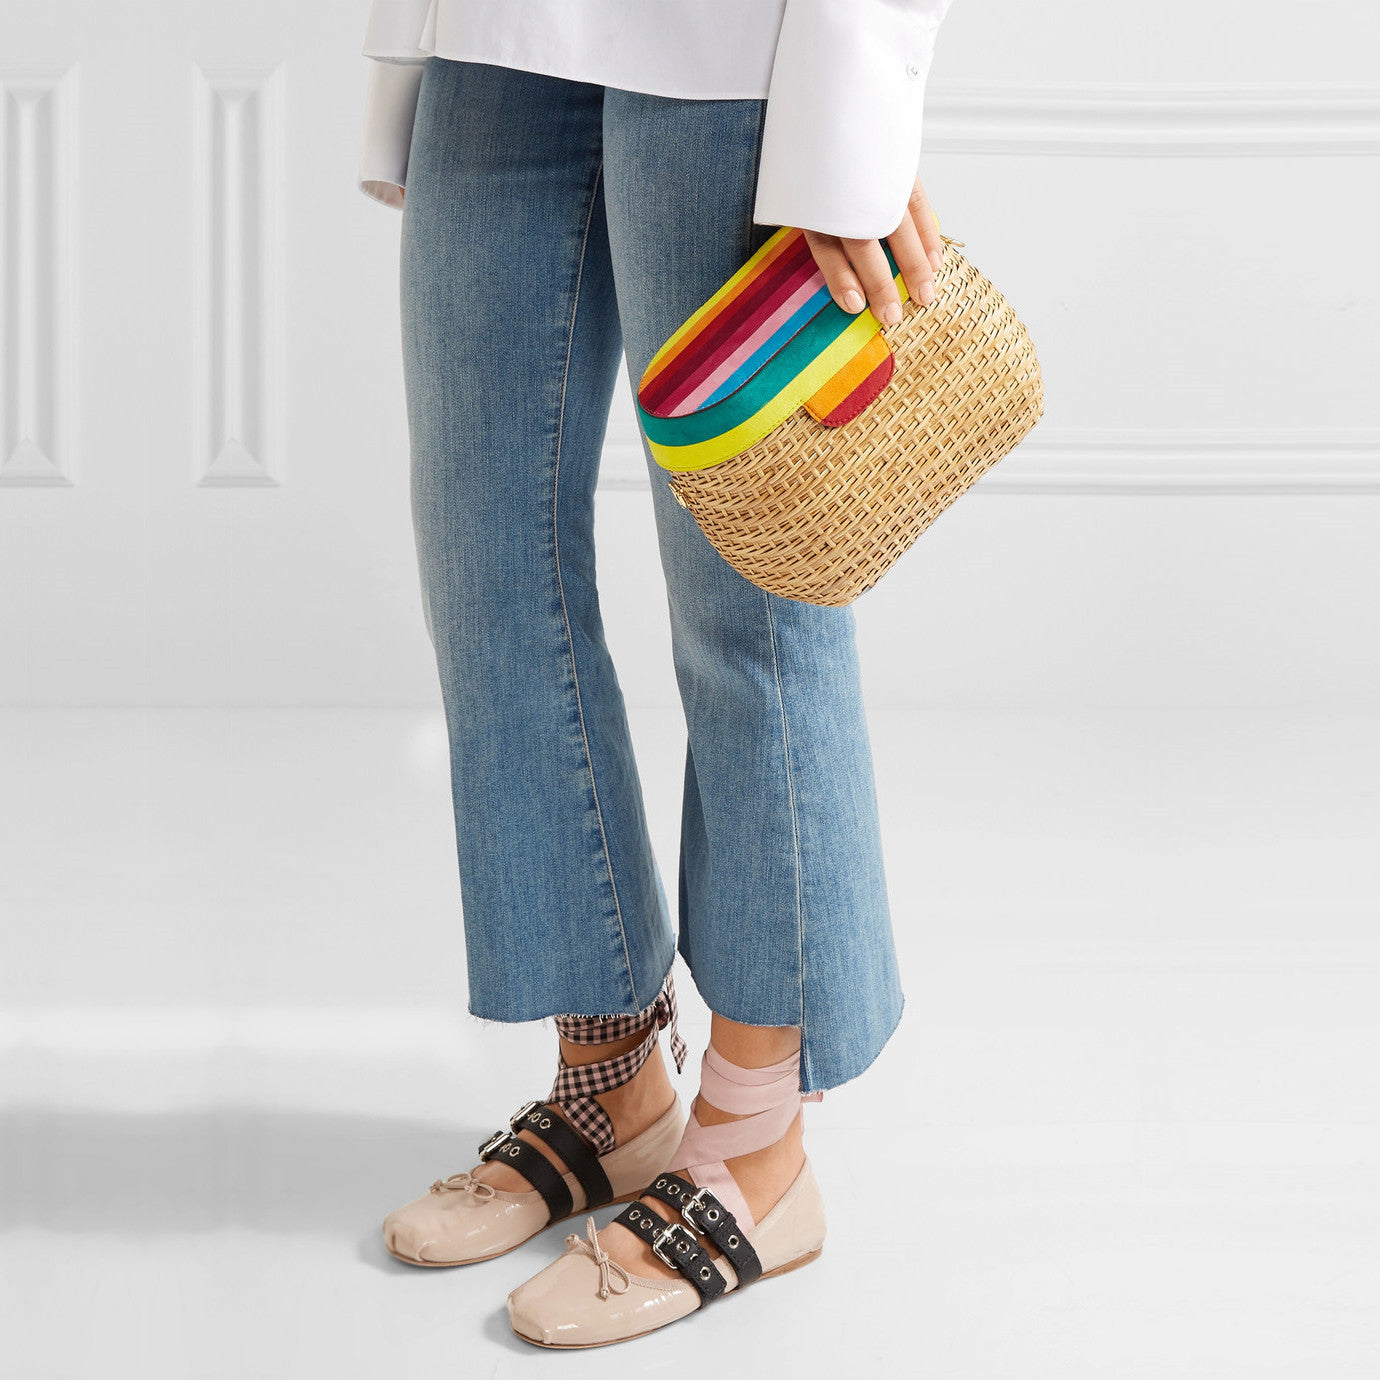 Jane Rainbow Bag by Edie Parker